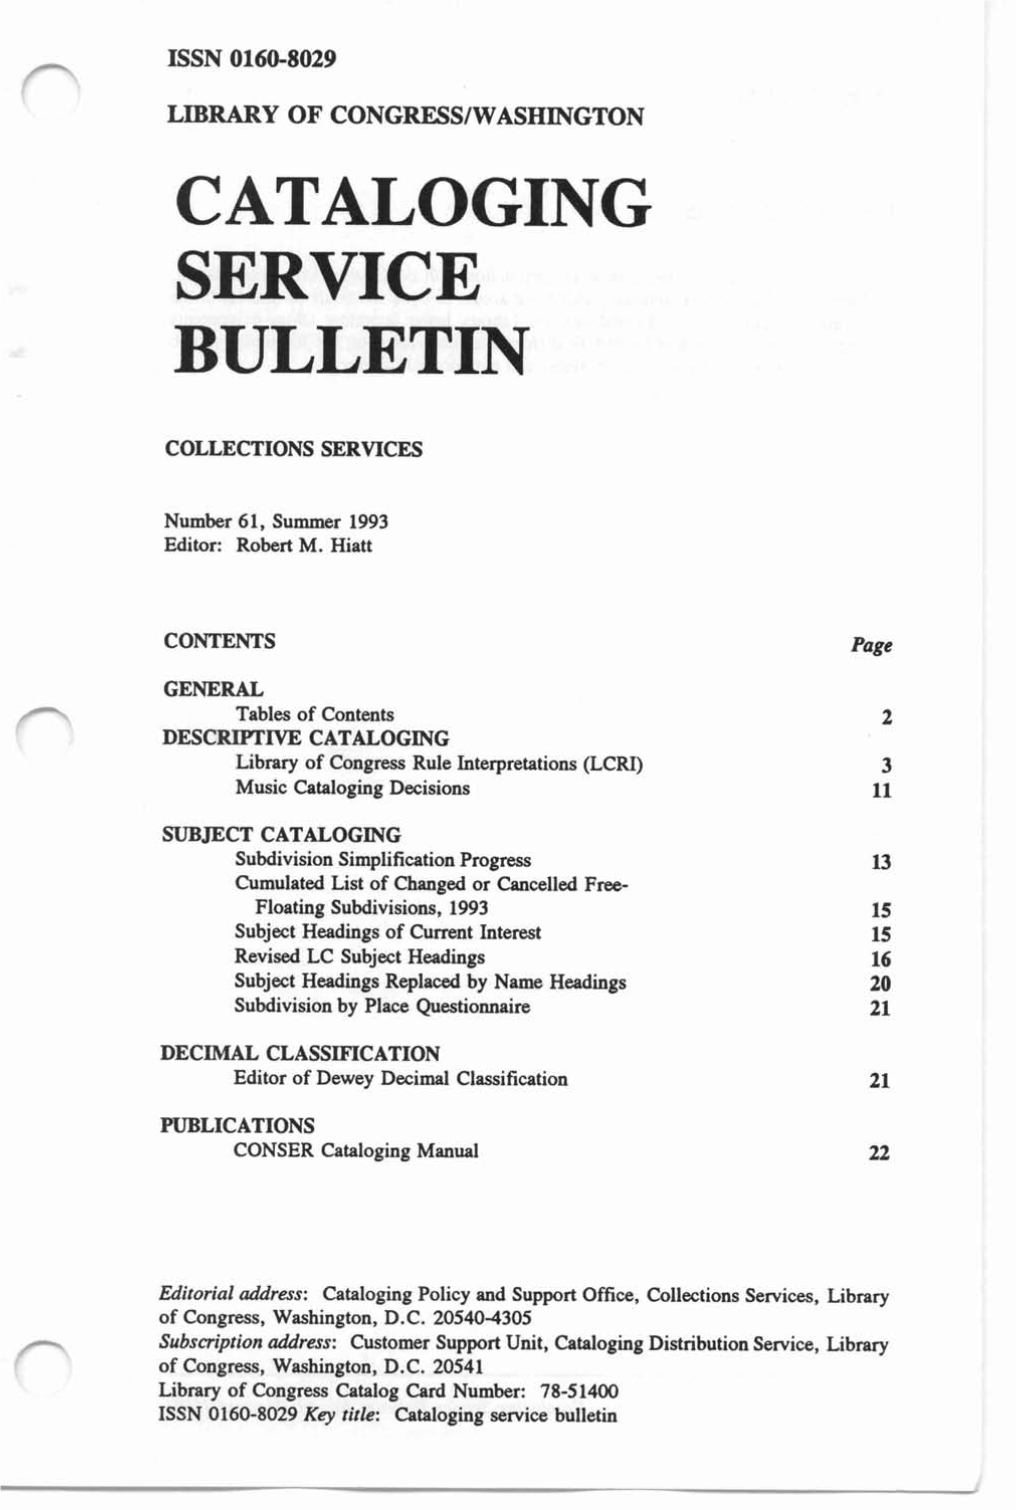 Cataloging Service Bulletin 061, Summer 1993